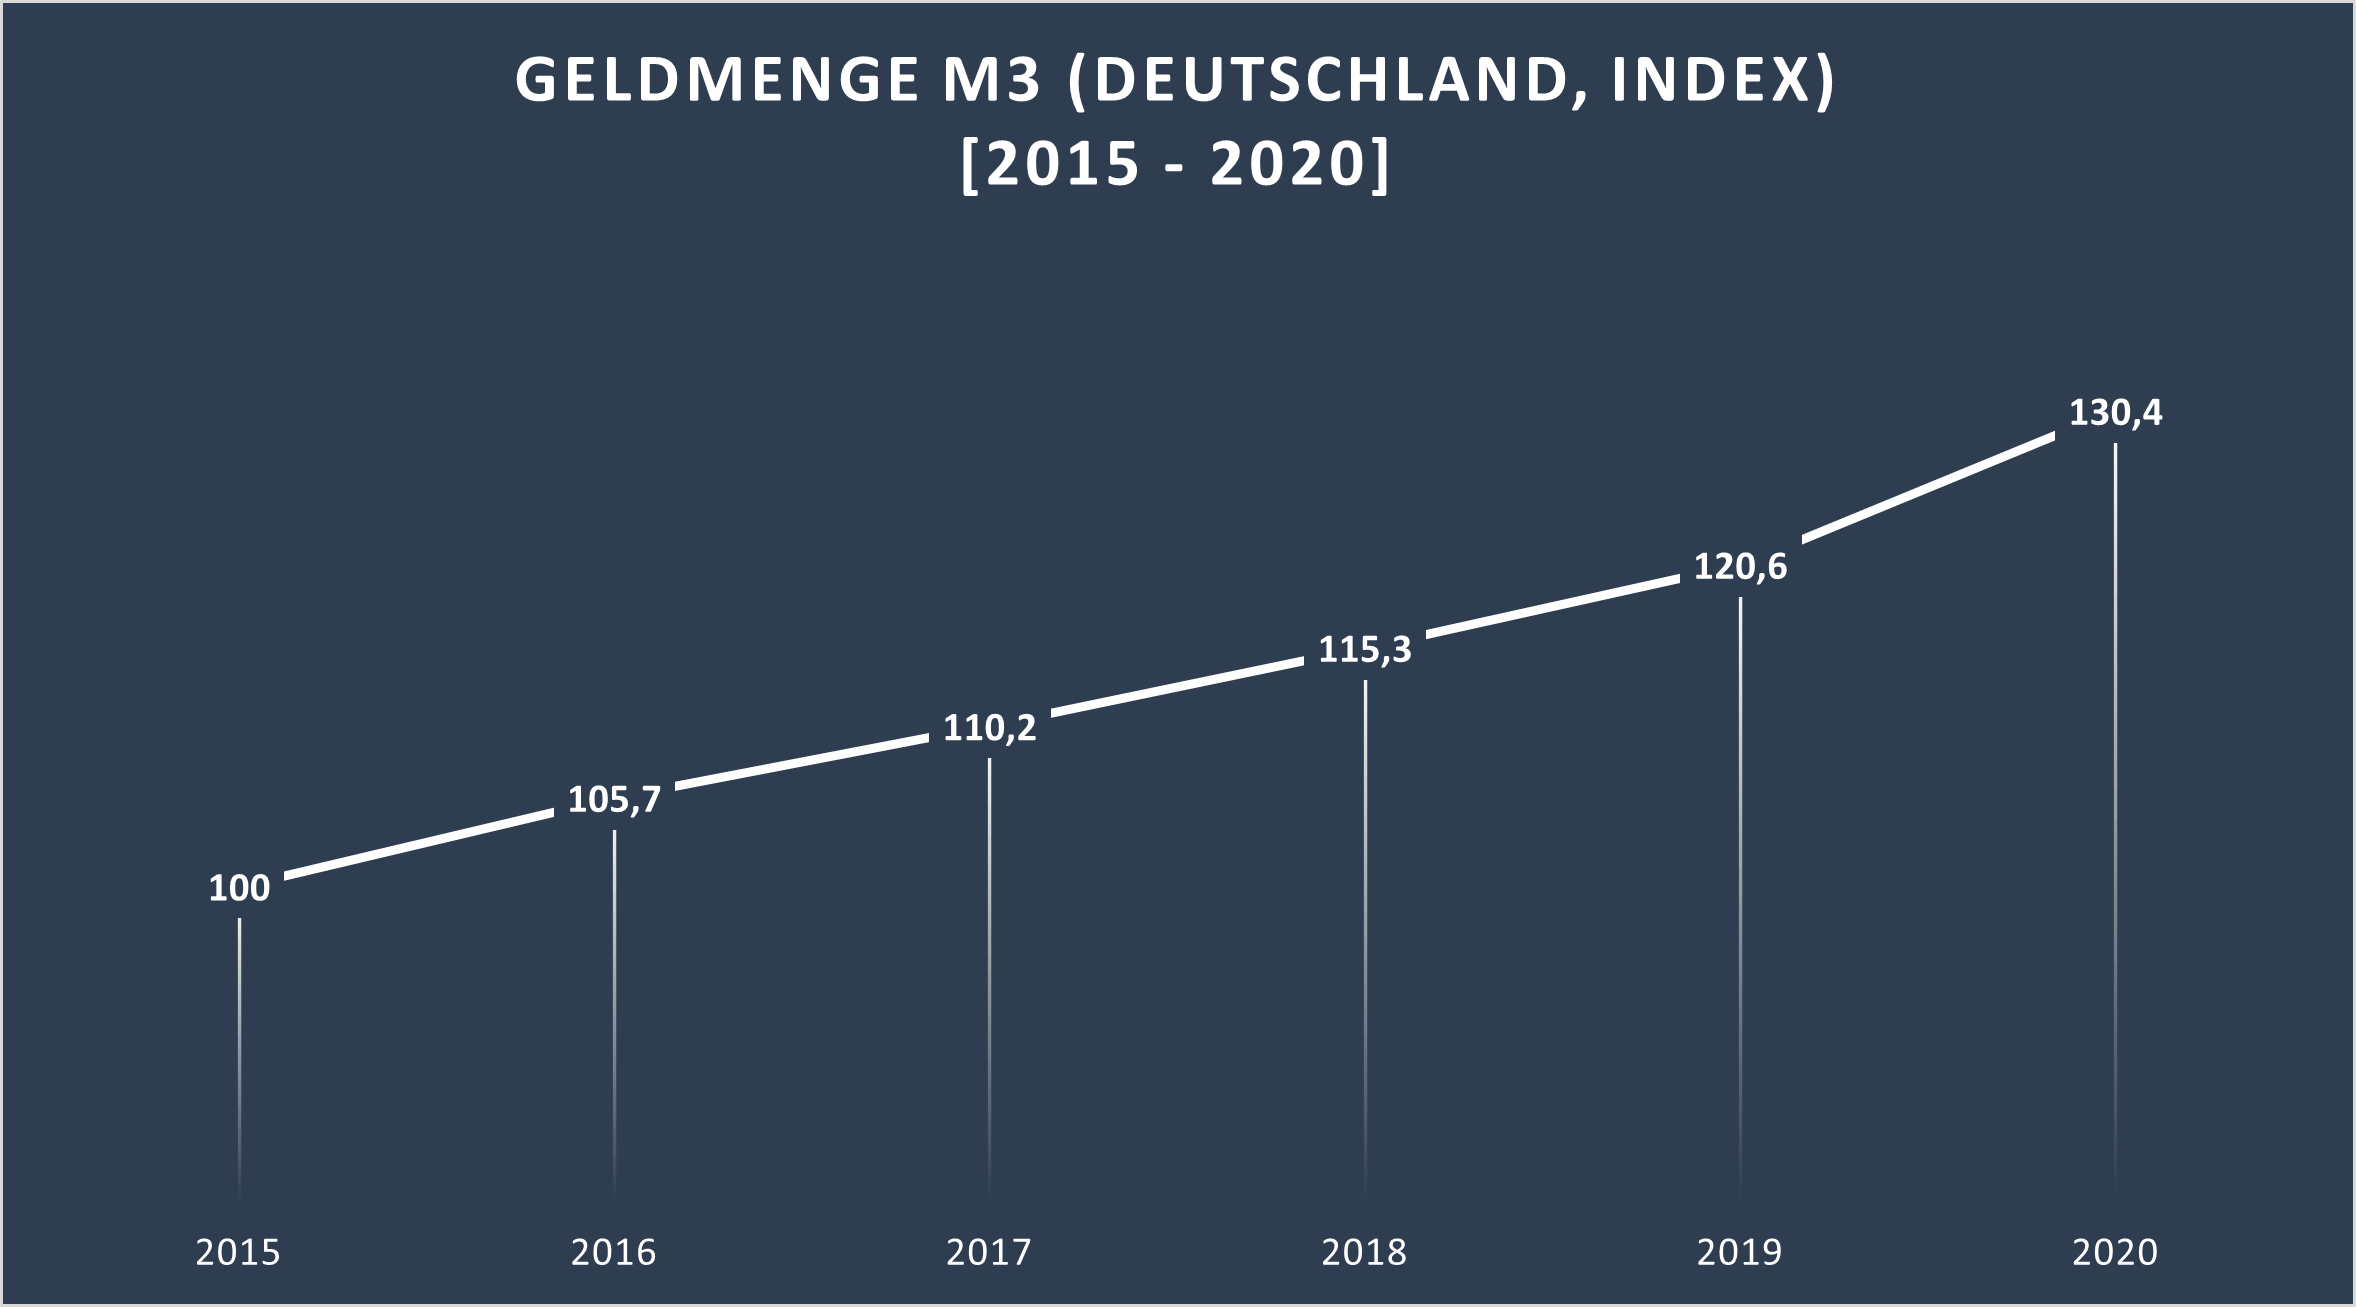 Steigerung der Geldmenge M3 zwischen 2015 und 2020 als Indexwert. Das Jahr 2015 wurde als Basiswert (=100 Punkte) festgelegt.